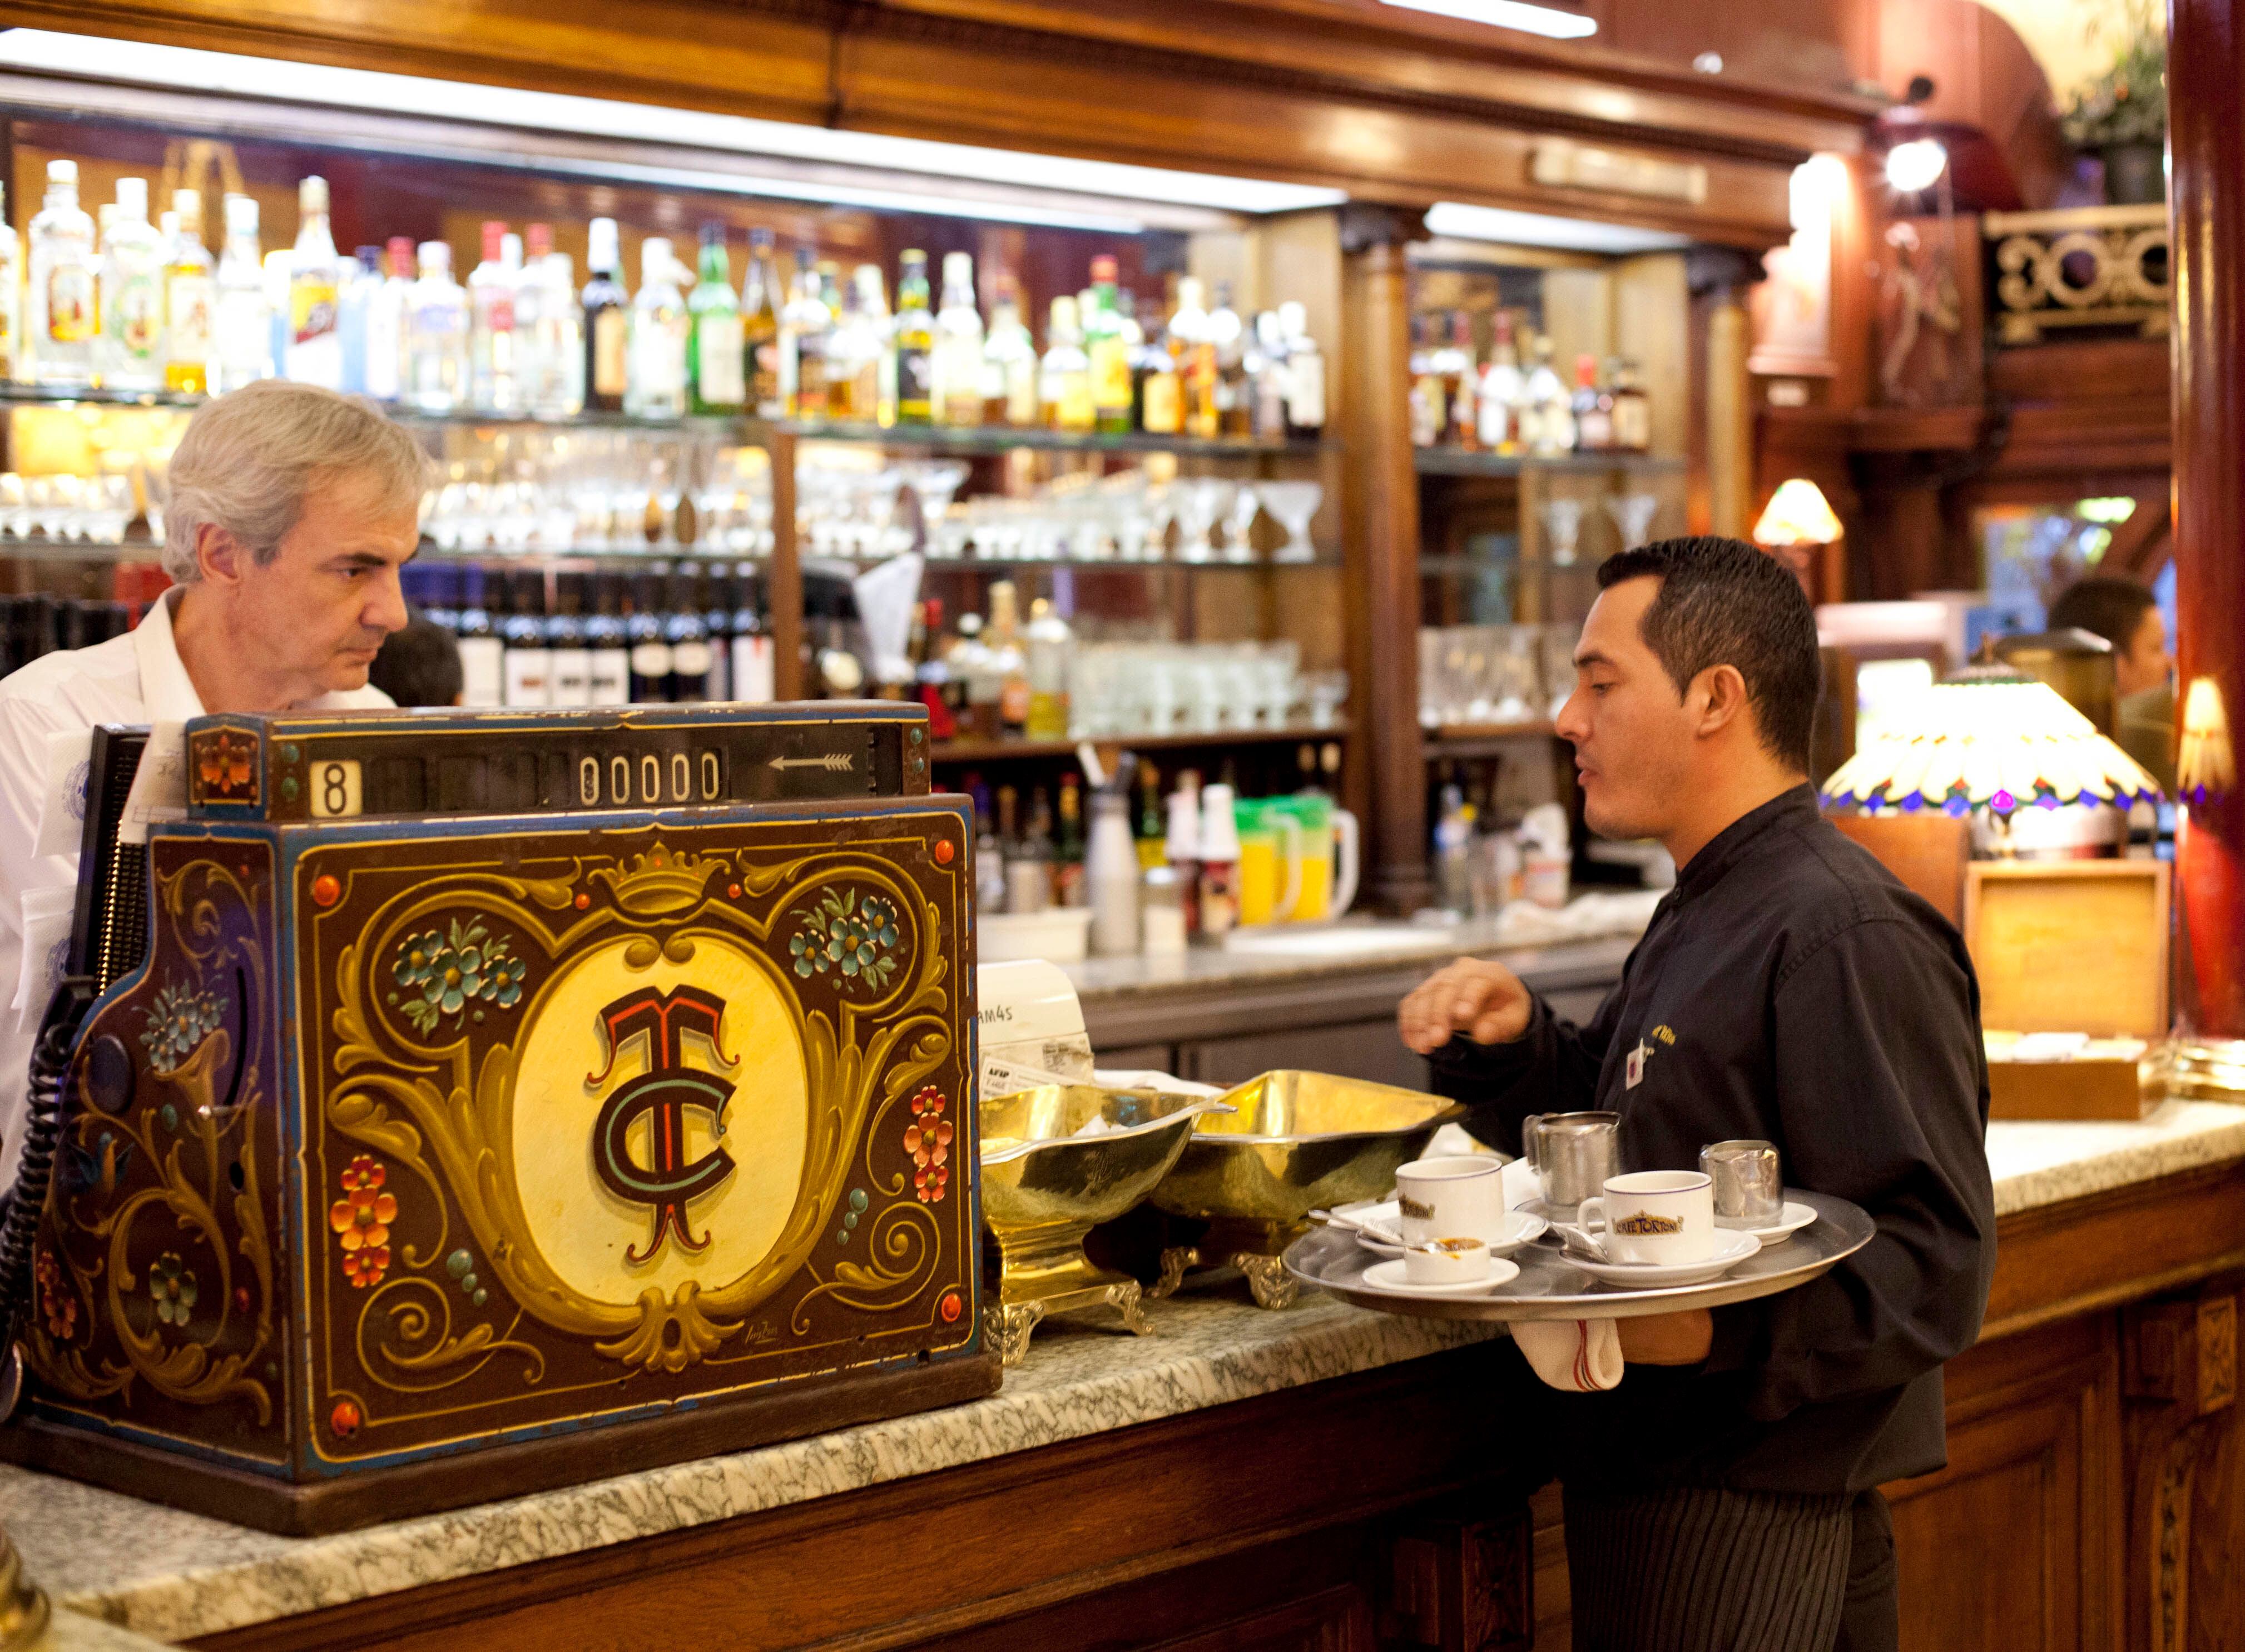 Camareros en la barra del histórico café Tortoni, uno de los más famosos de Buenos Aires.  